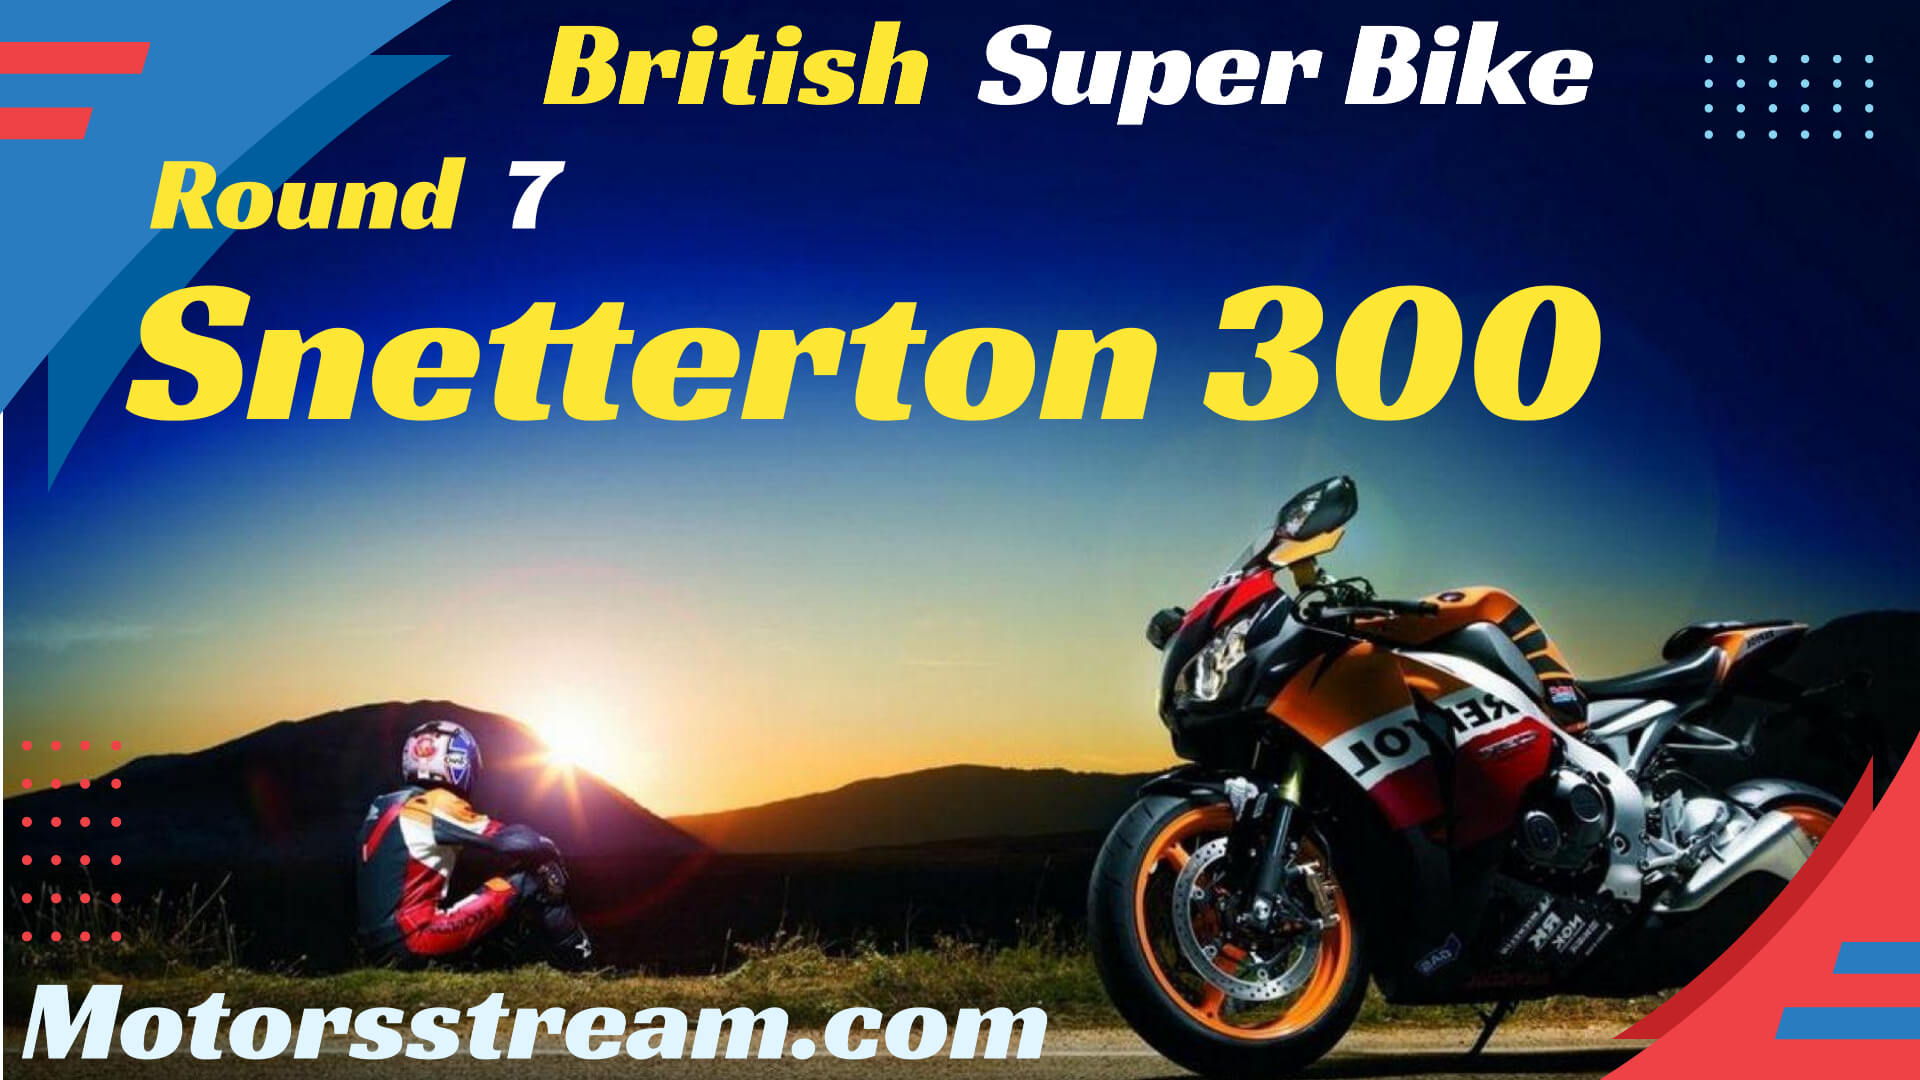 snetterton-300-british-superbike-round-7-live-stream